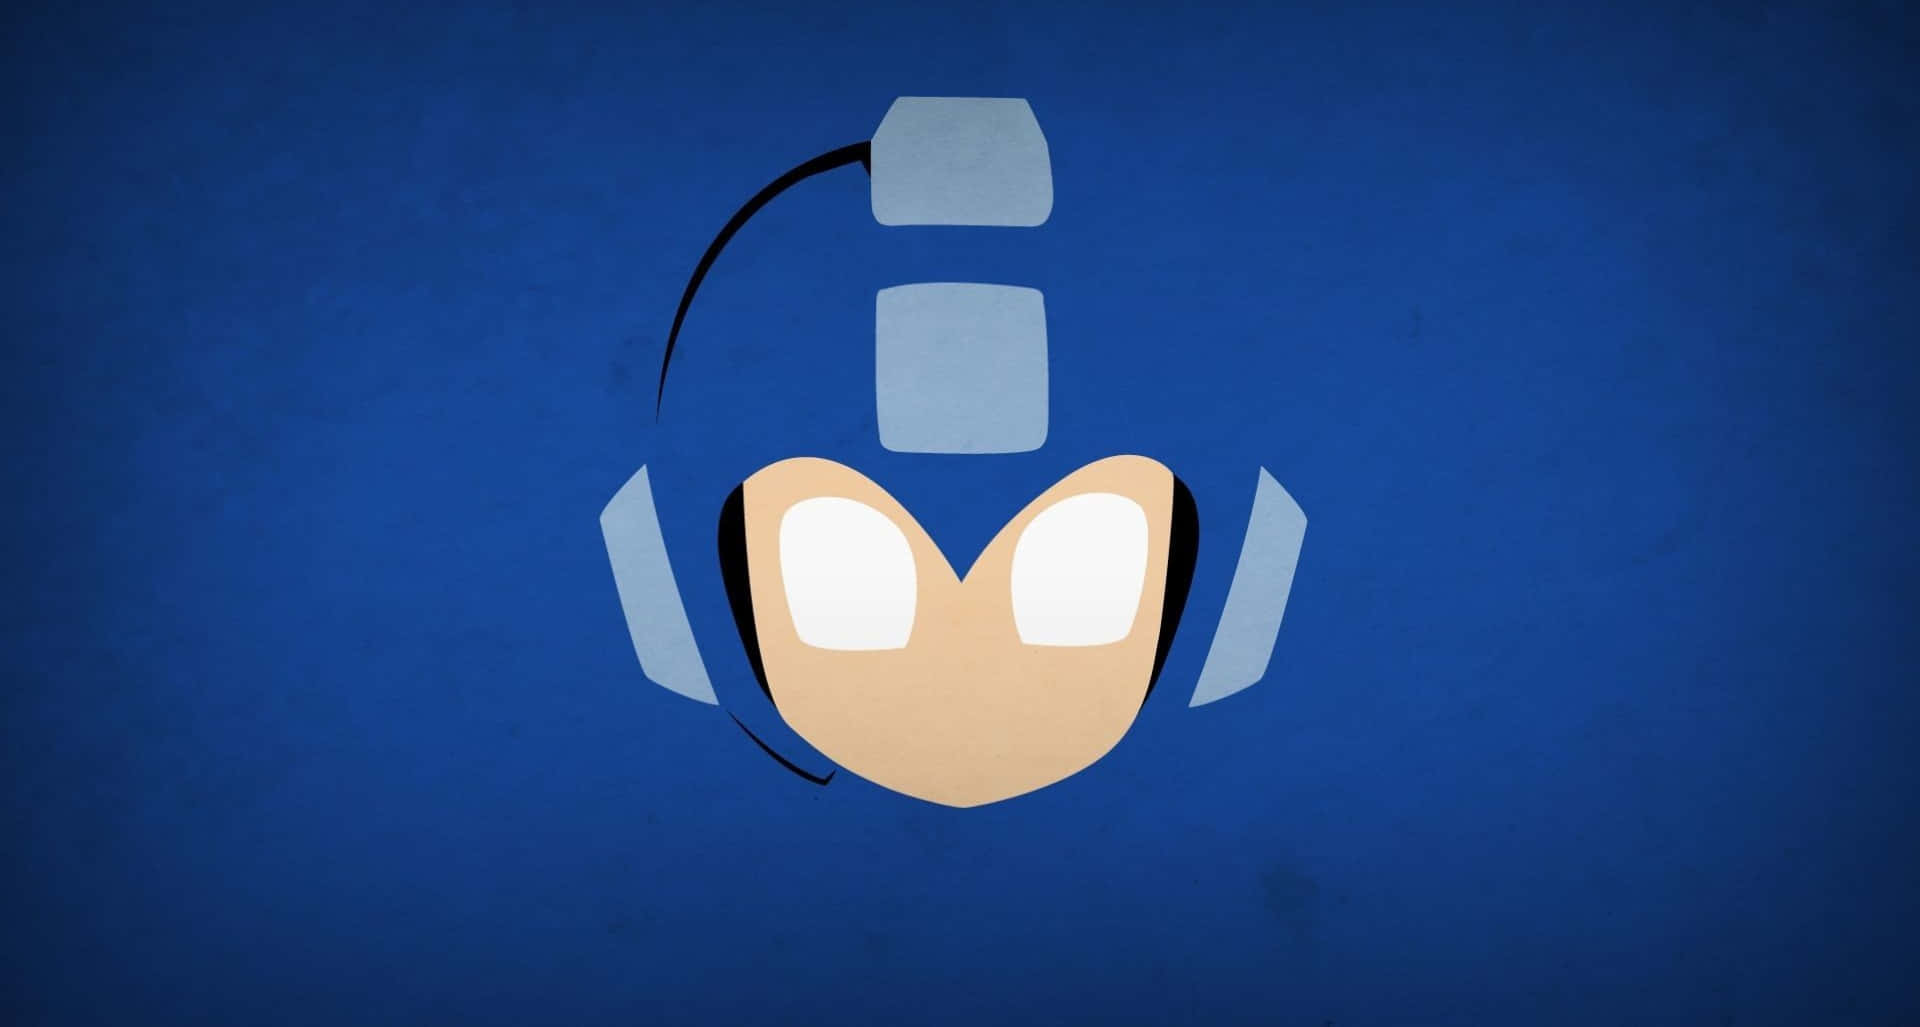 Einblauer Und Weißer Sonic The Hedgehog Mit Einem Blauen Kopf. Wallpaper